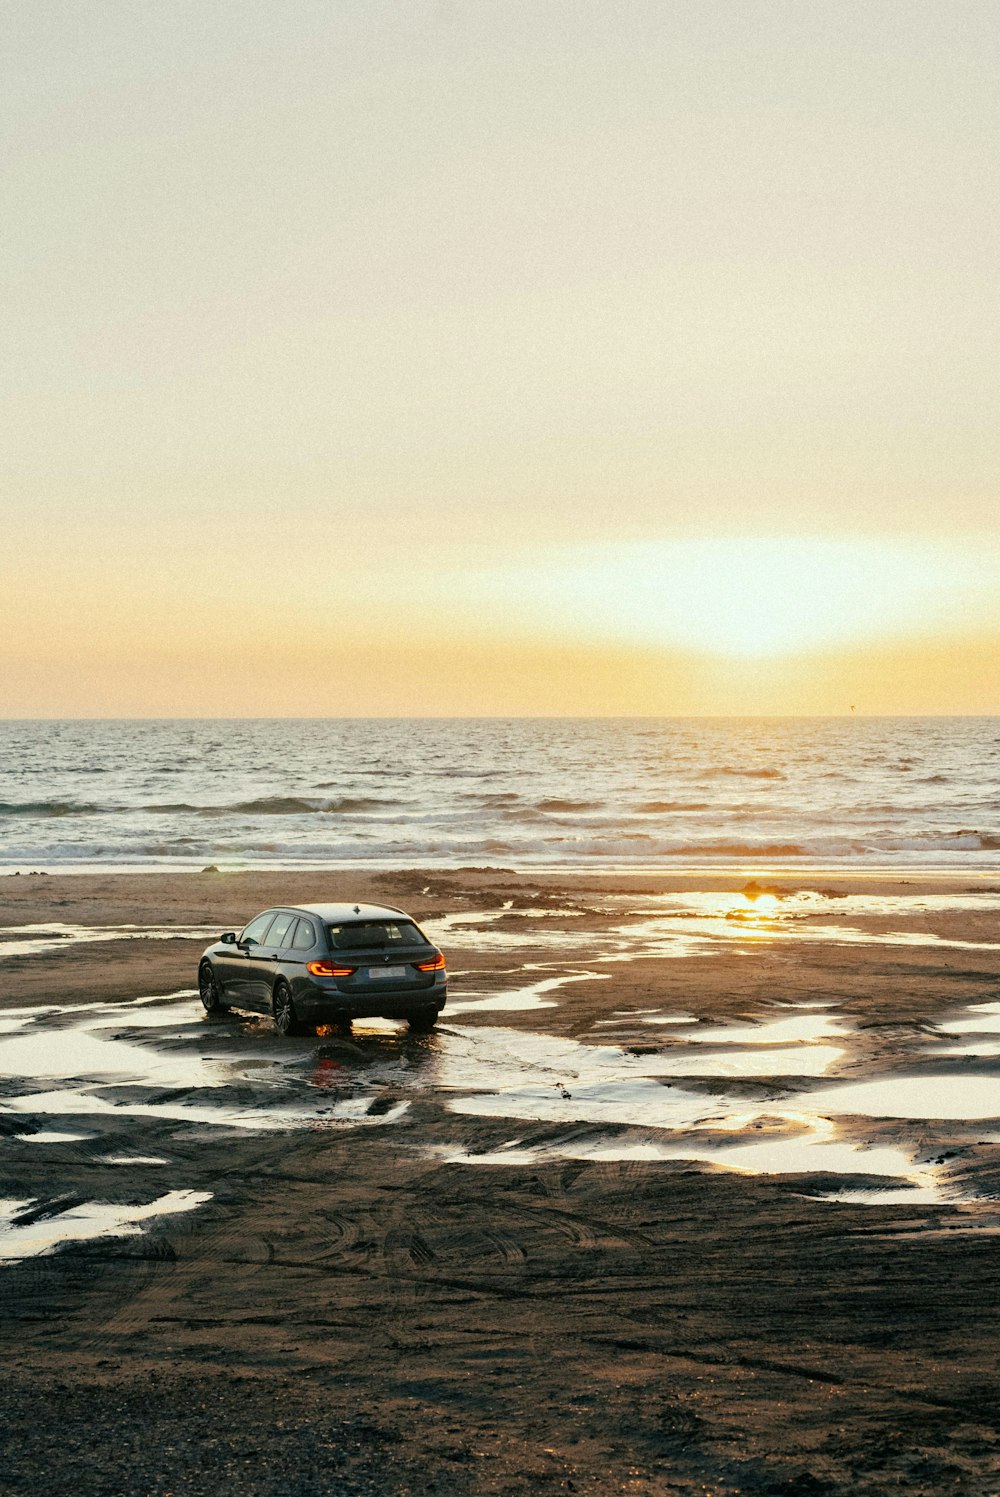 a car on a beach